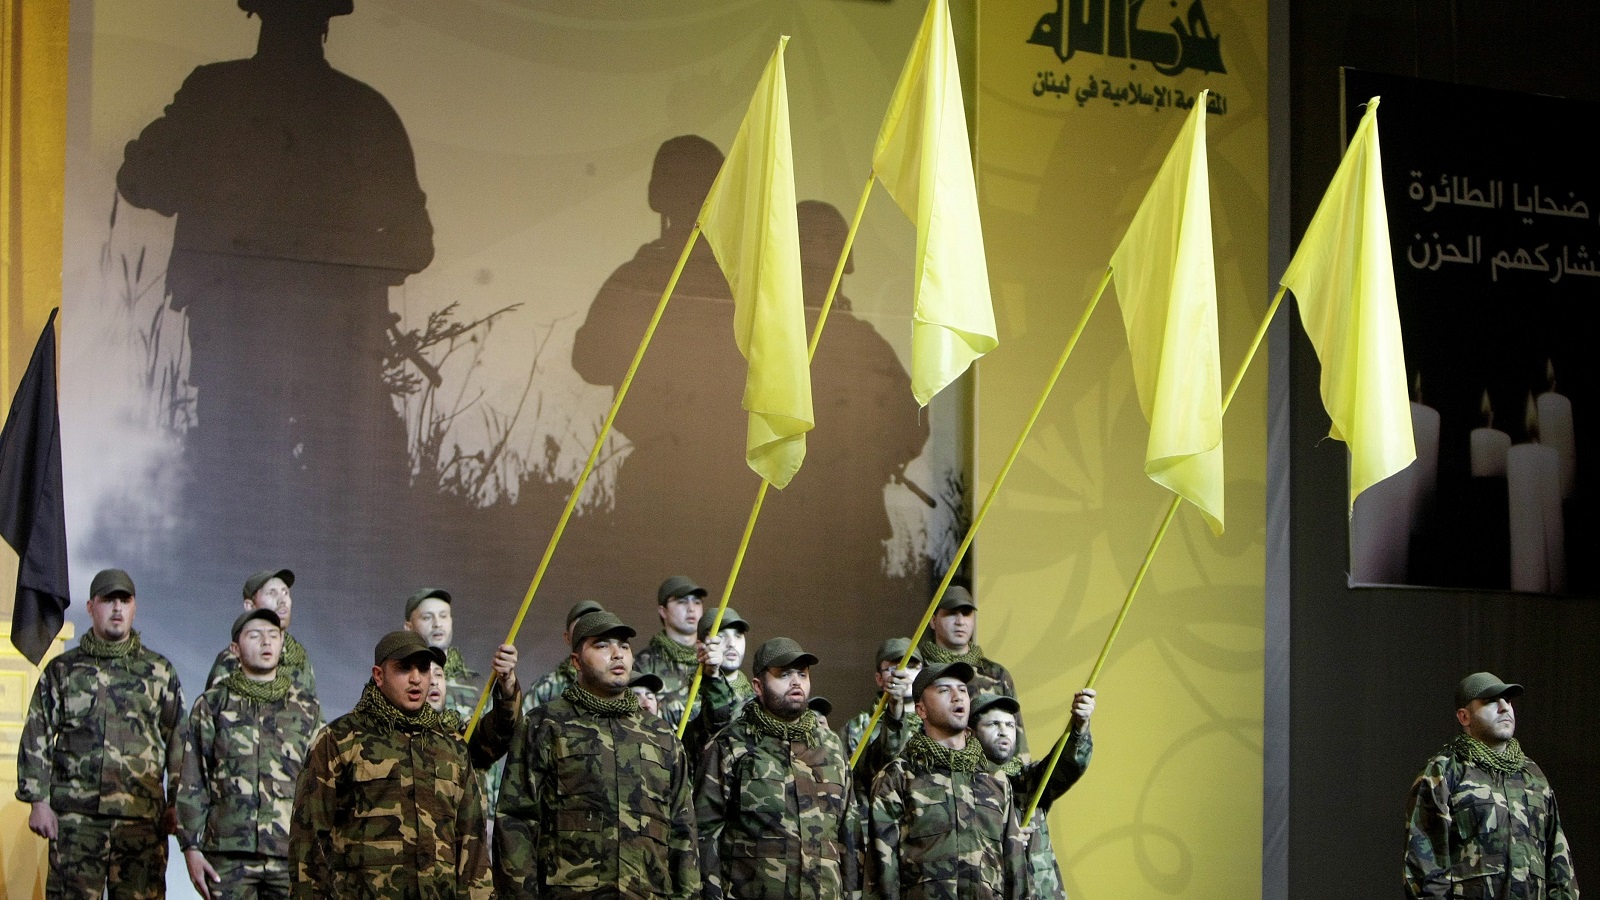 تحقيق دولي: حزب الله يستغل القناصل الفخريين لتوسيع نشاطاته